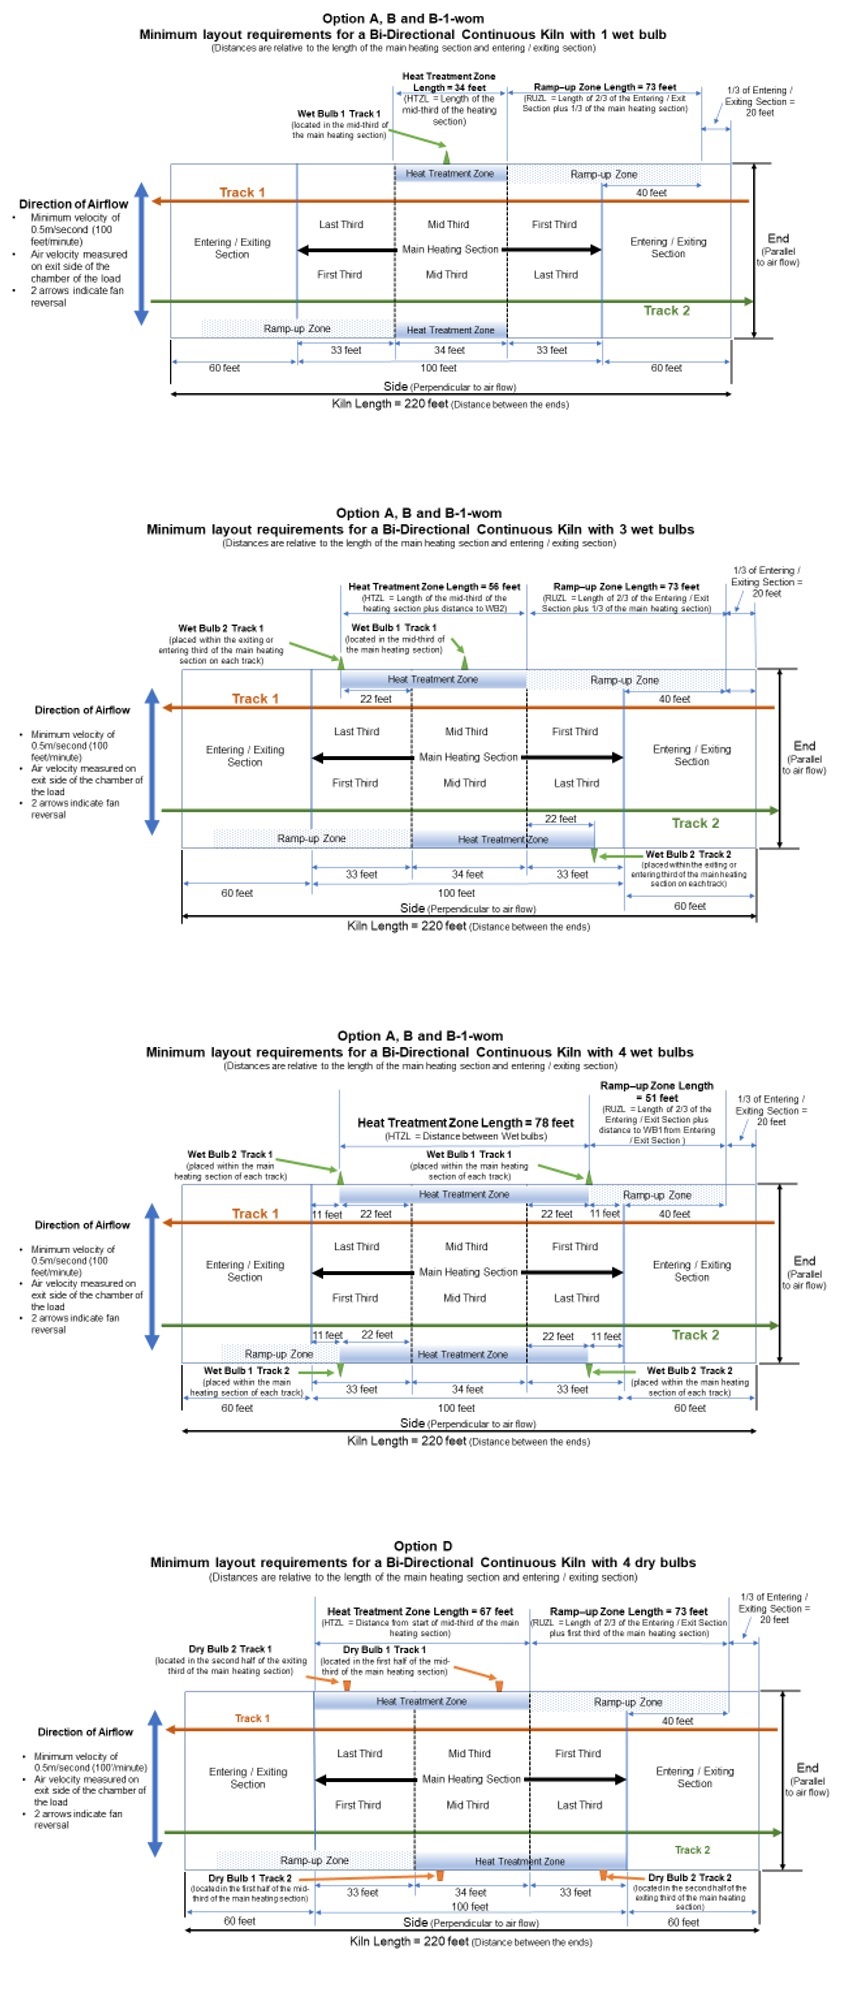 Appendix D: bi-directional continuous kiln layout diagrams. Description follows.